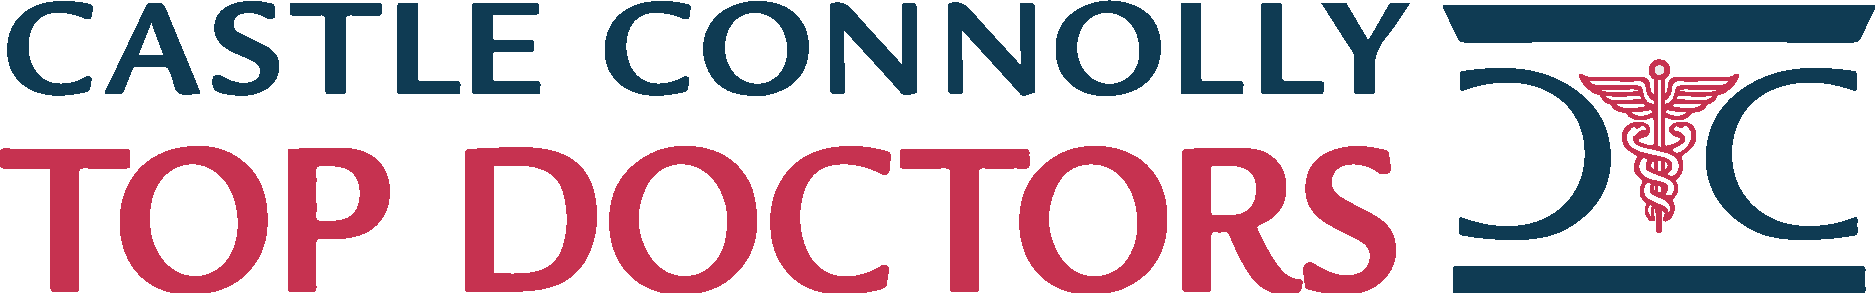 Castle Connolly Top Doctor Logo Vector